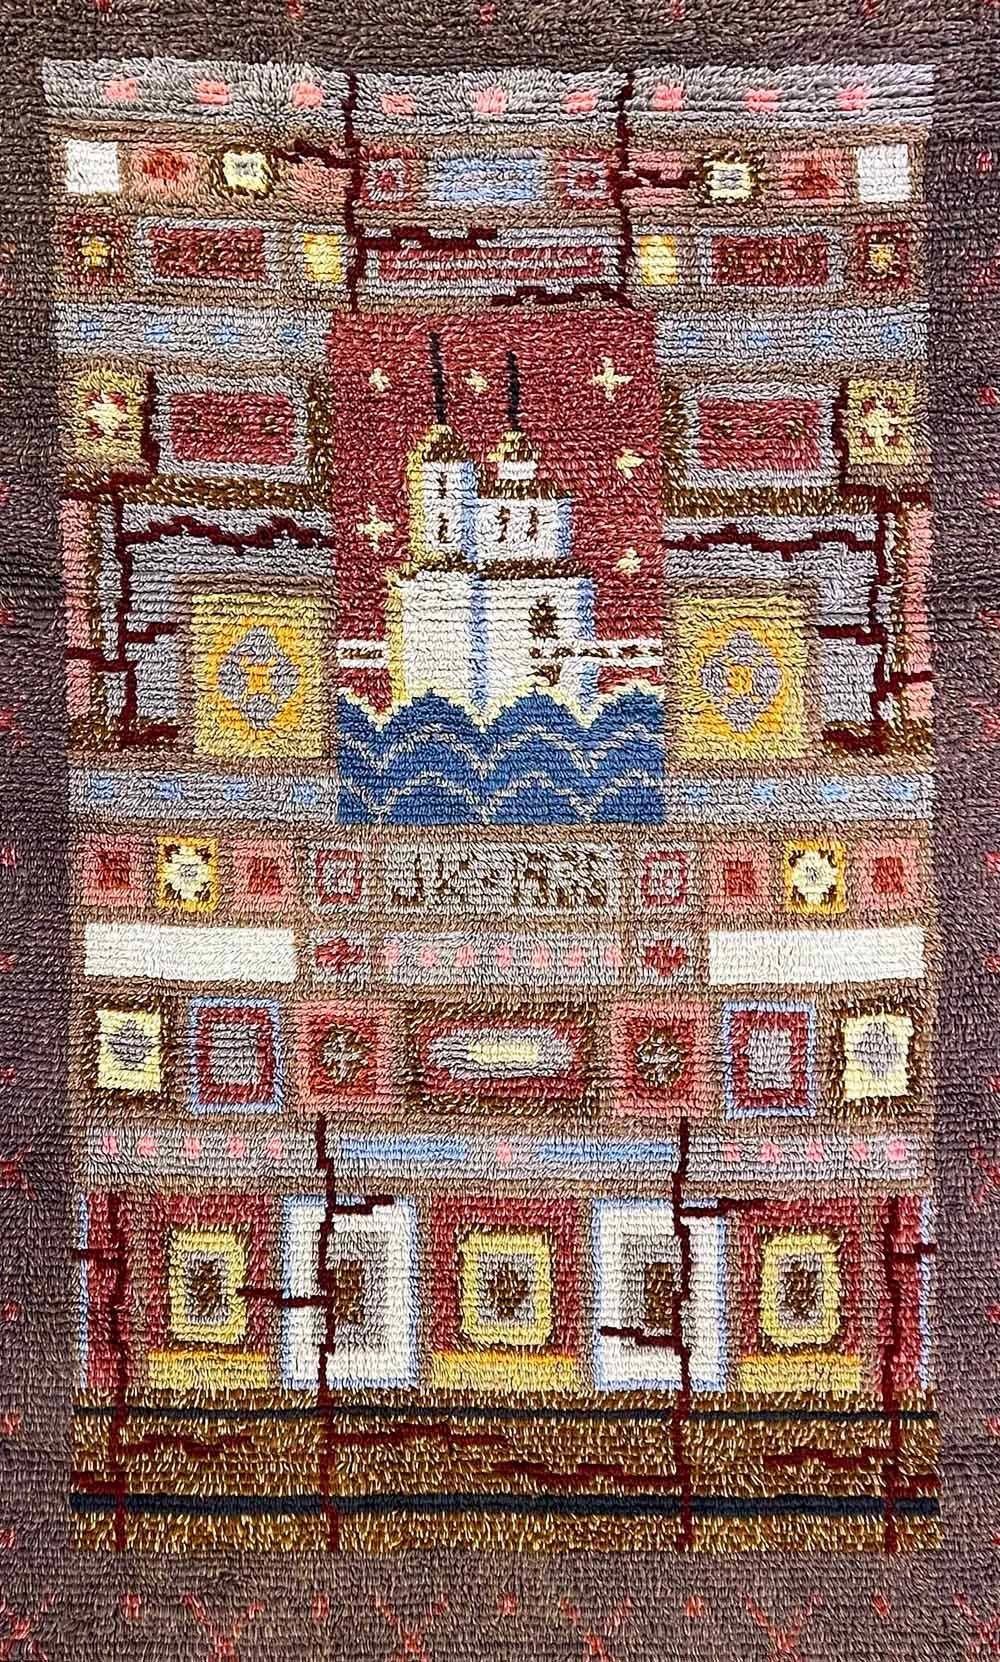 Dieser einzigartige und auffällige Langflor-Ryijy-Teppich wurde von Pia Katerma in Finnland entworfen und zeigt die Burg Kajaani im Zentrum des Wappens von Kajaani, umgeben von geometrischen Mustern und Symbolen in satten, gedeckten Farben -